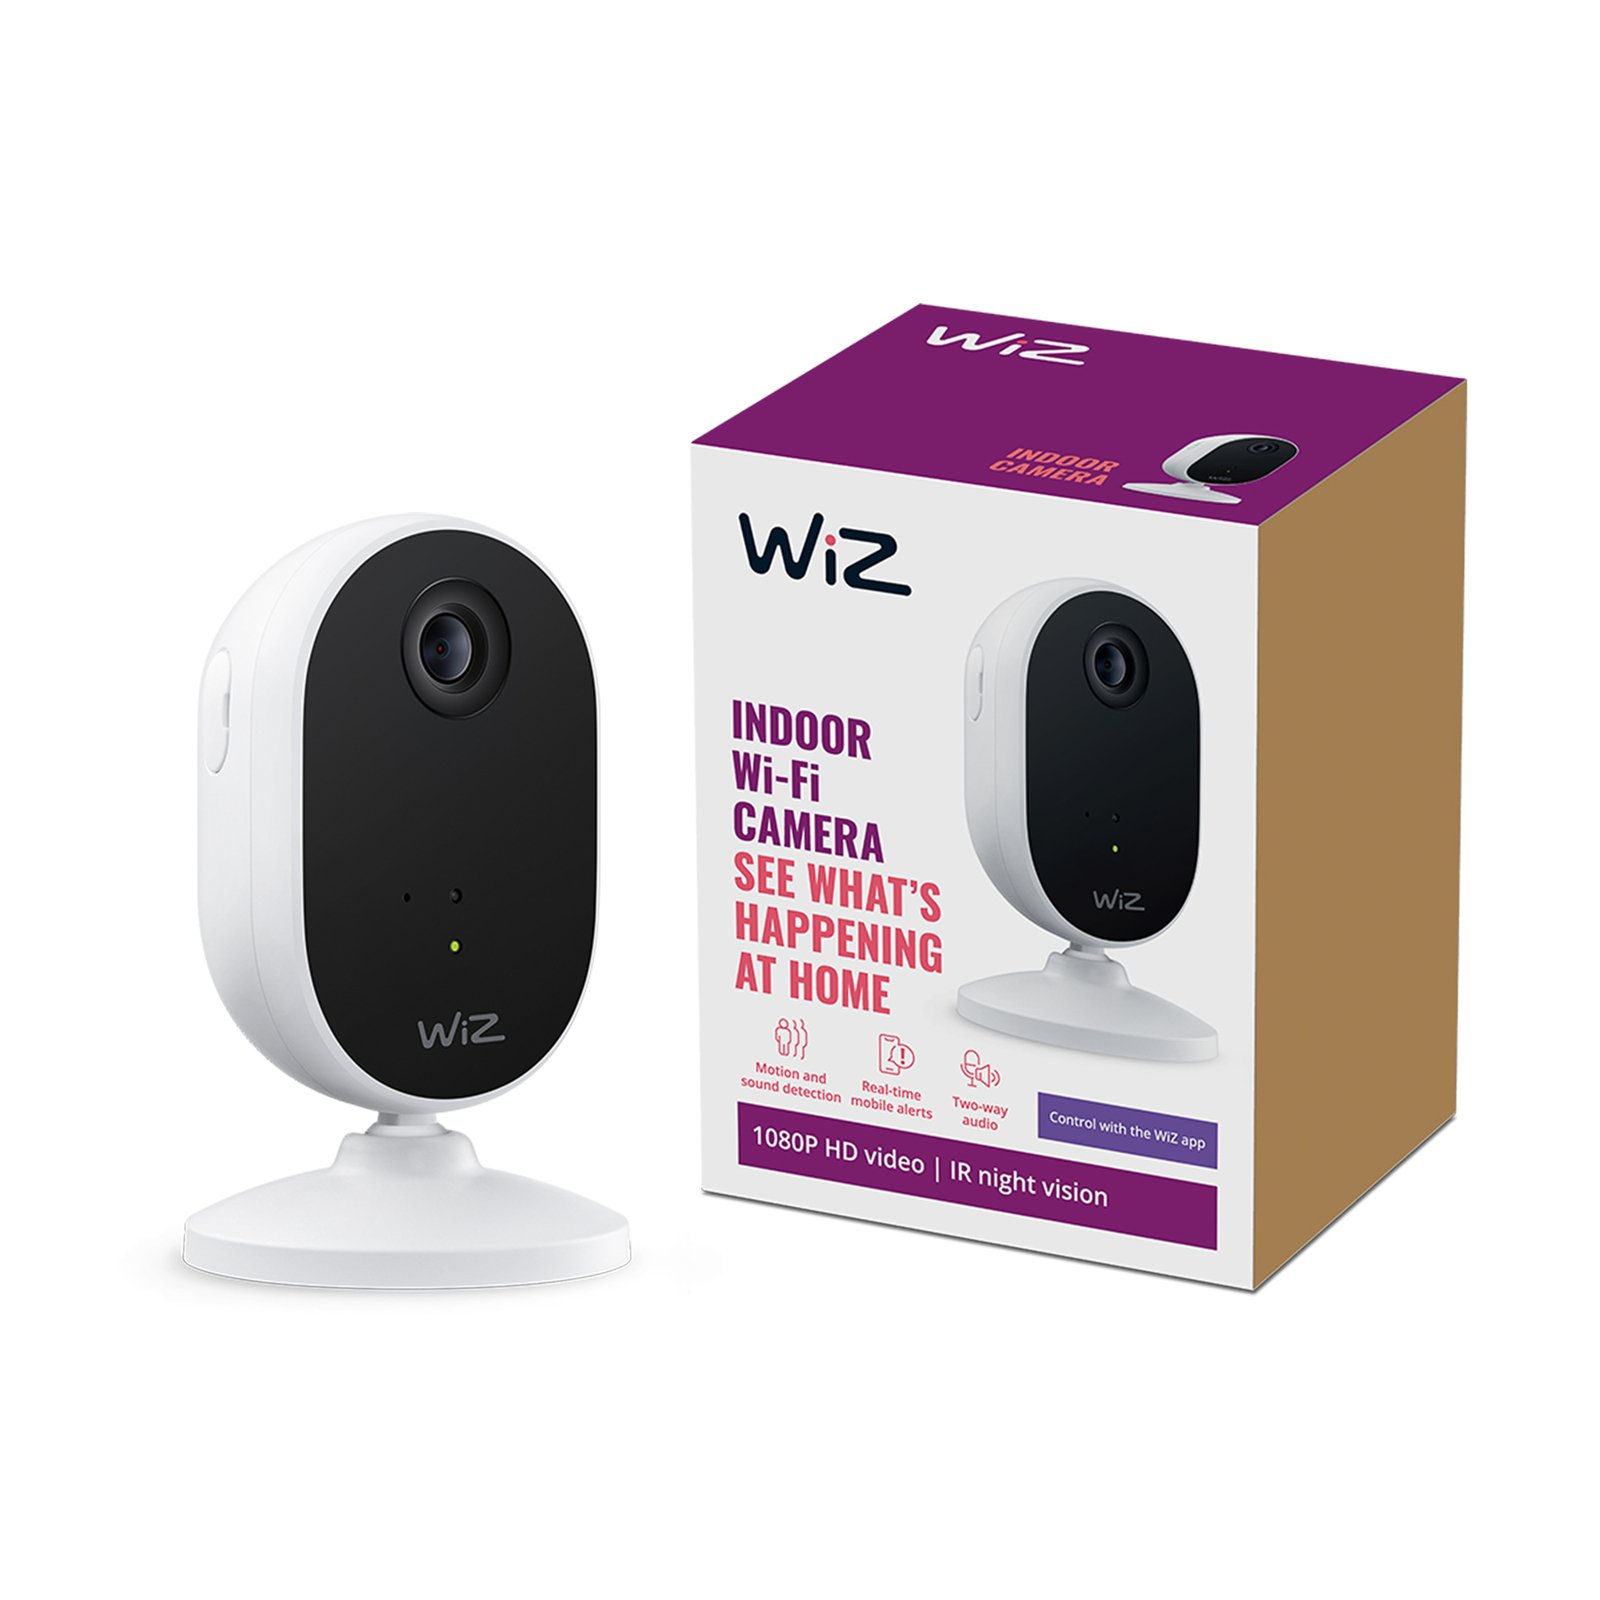 WiZ unutarnja sigurnosna kamera s Wi-Fi mrežom